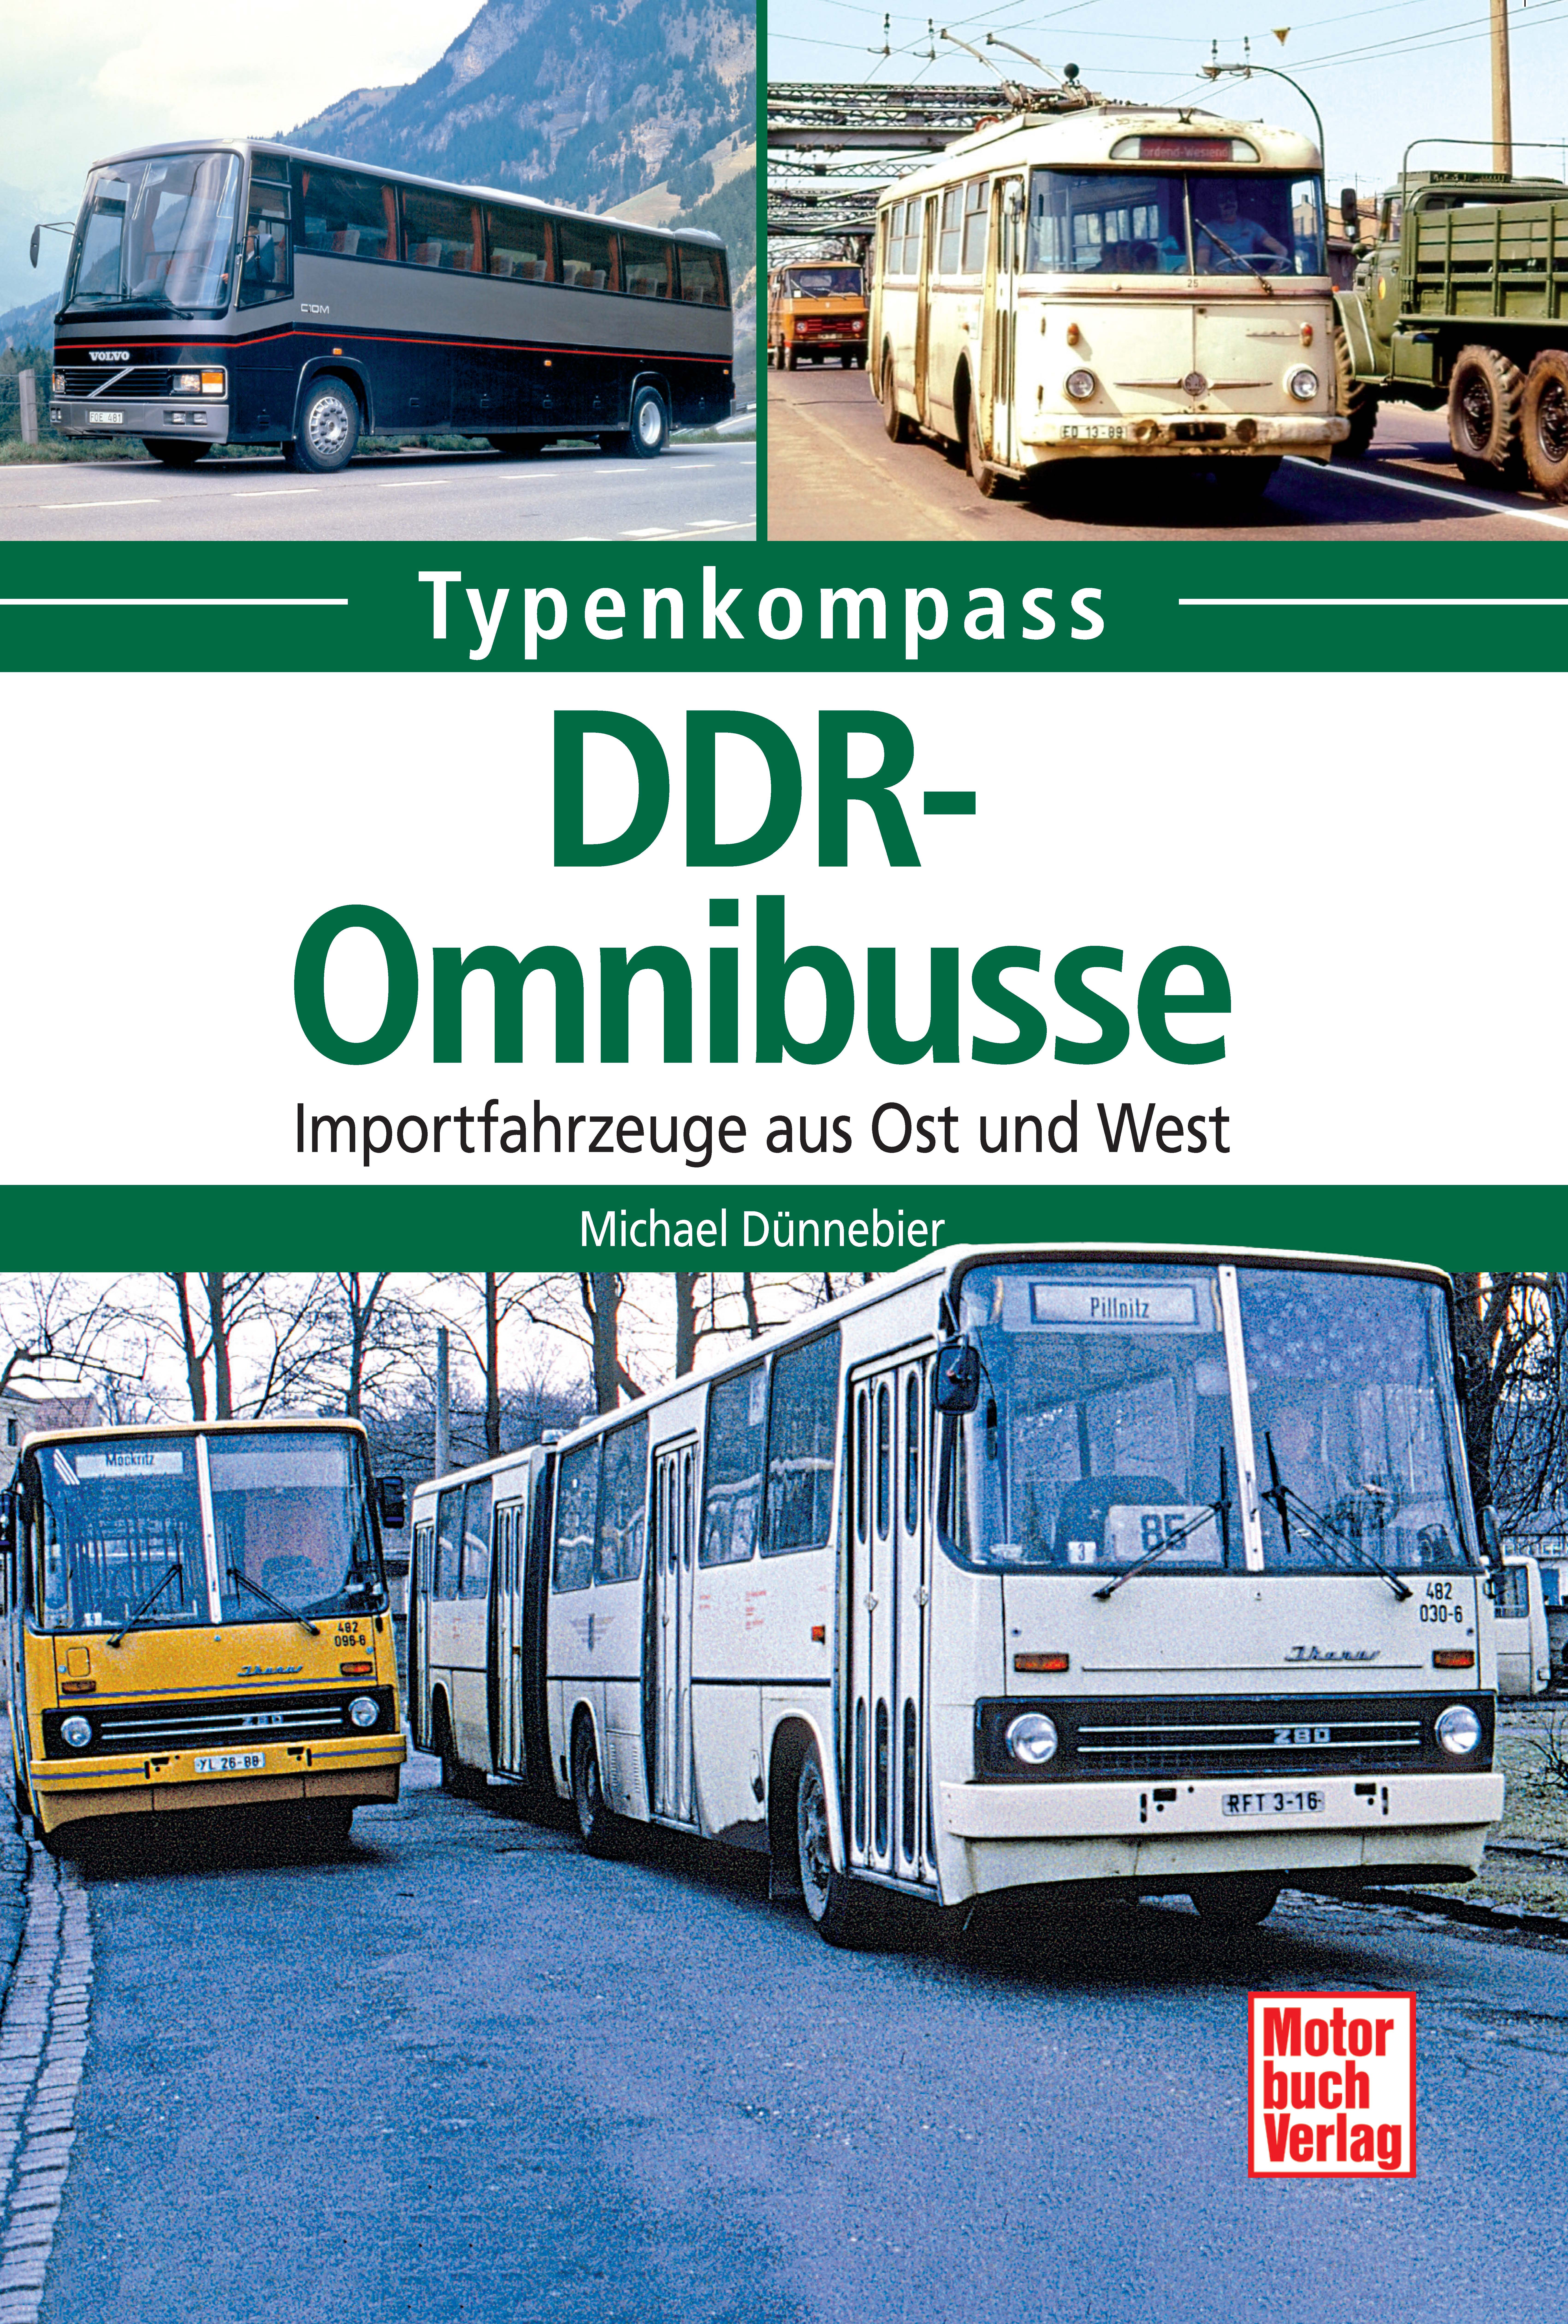 TK DDR Omnibusse_Seite_01